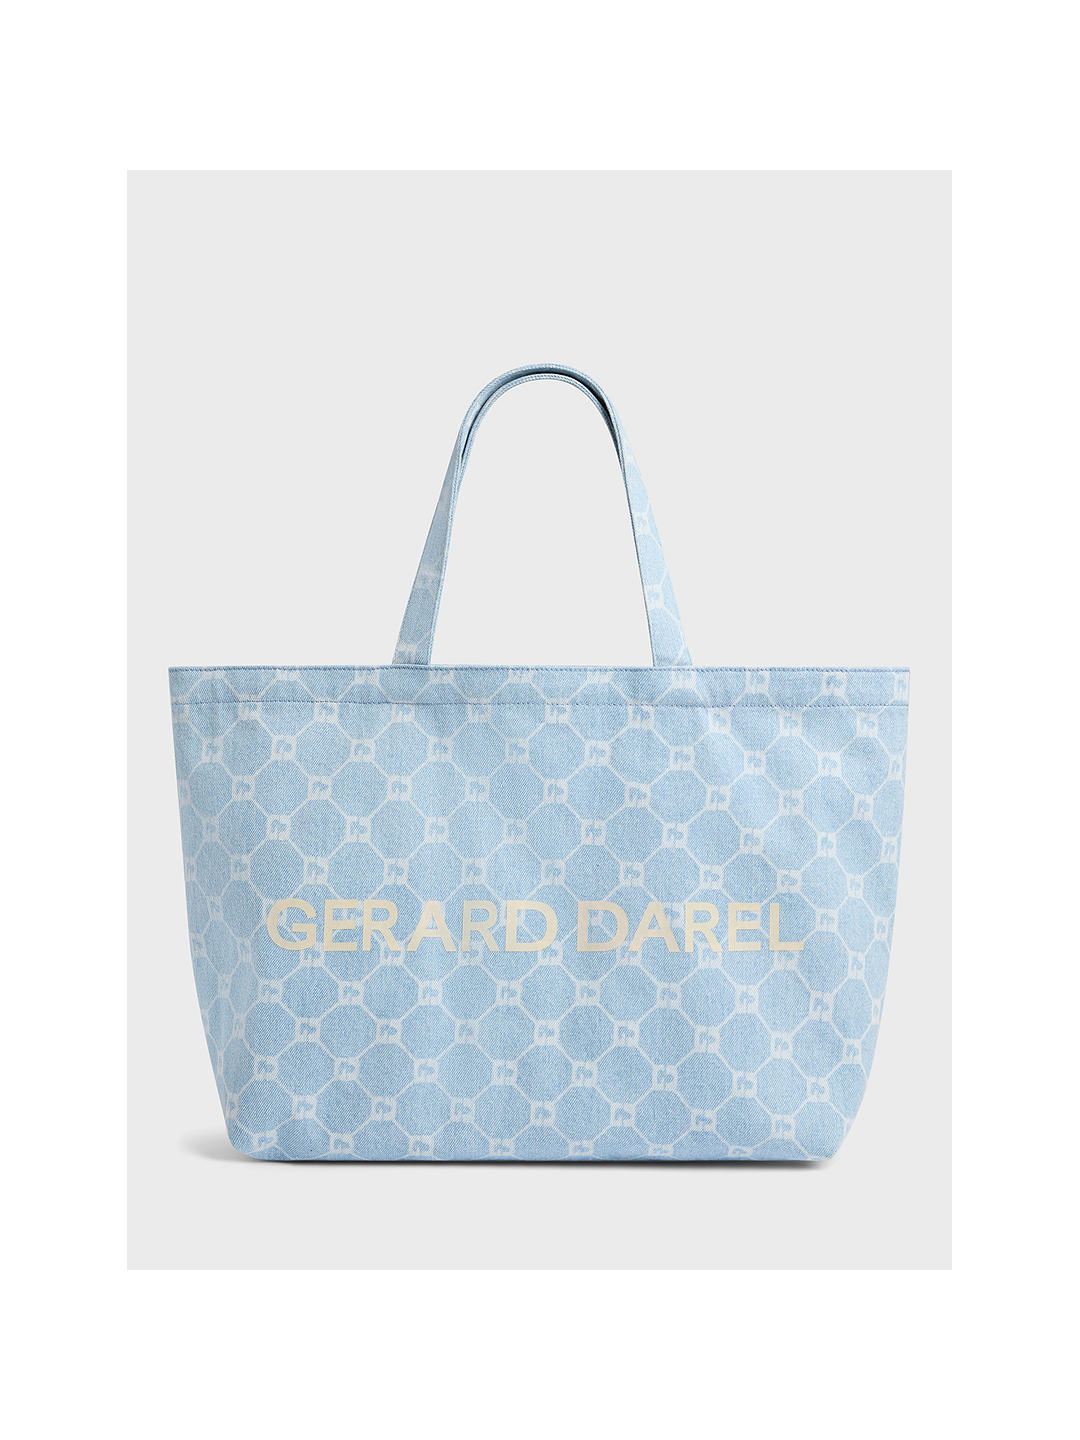 Gerard Darel Lolita Tote Bag, Blue